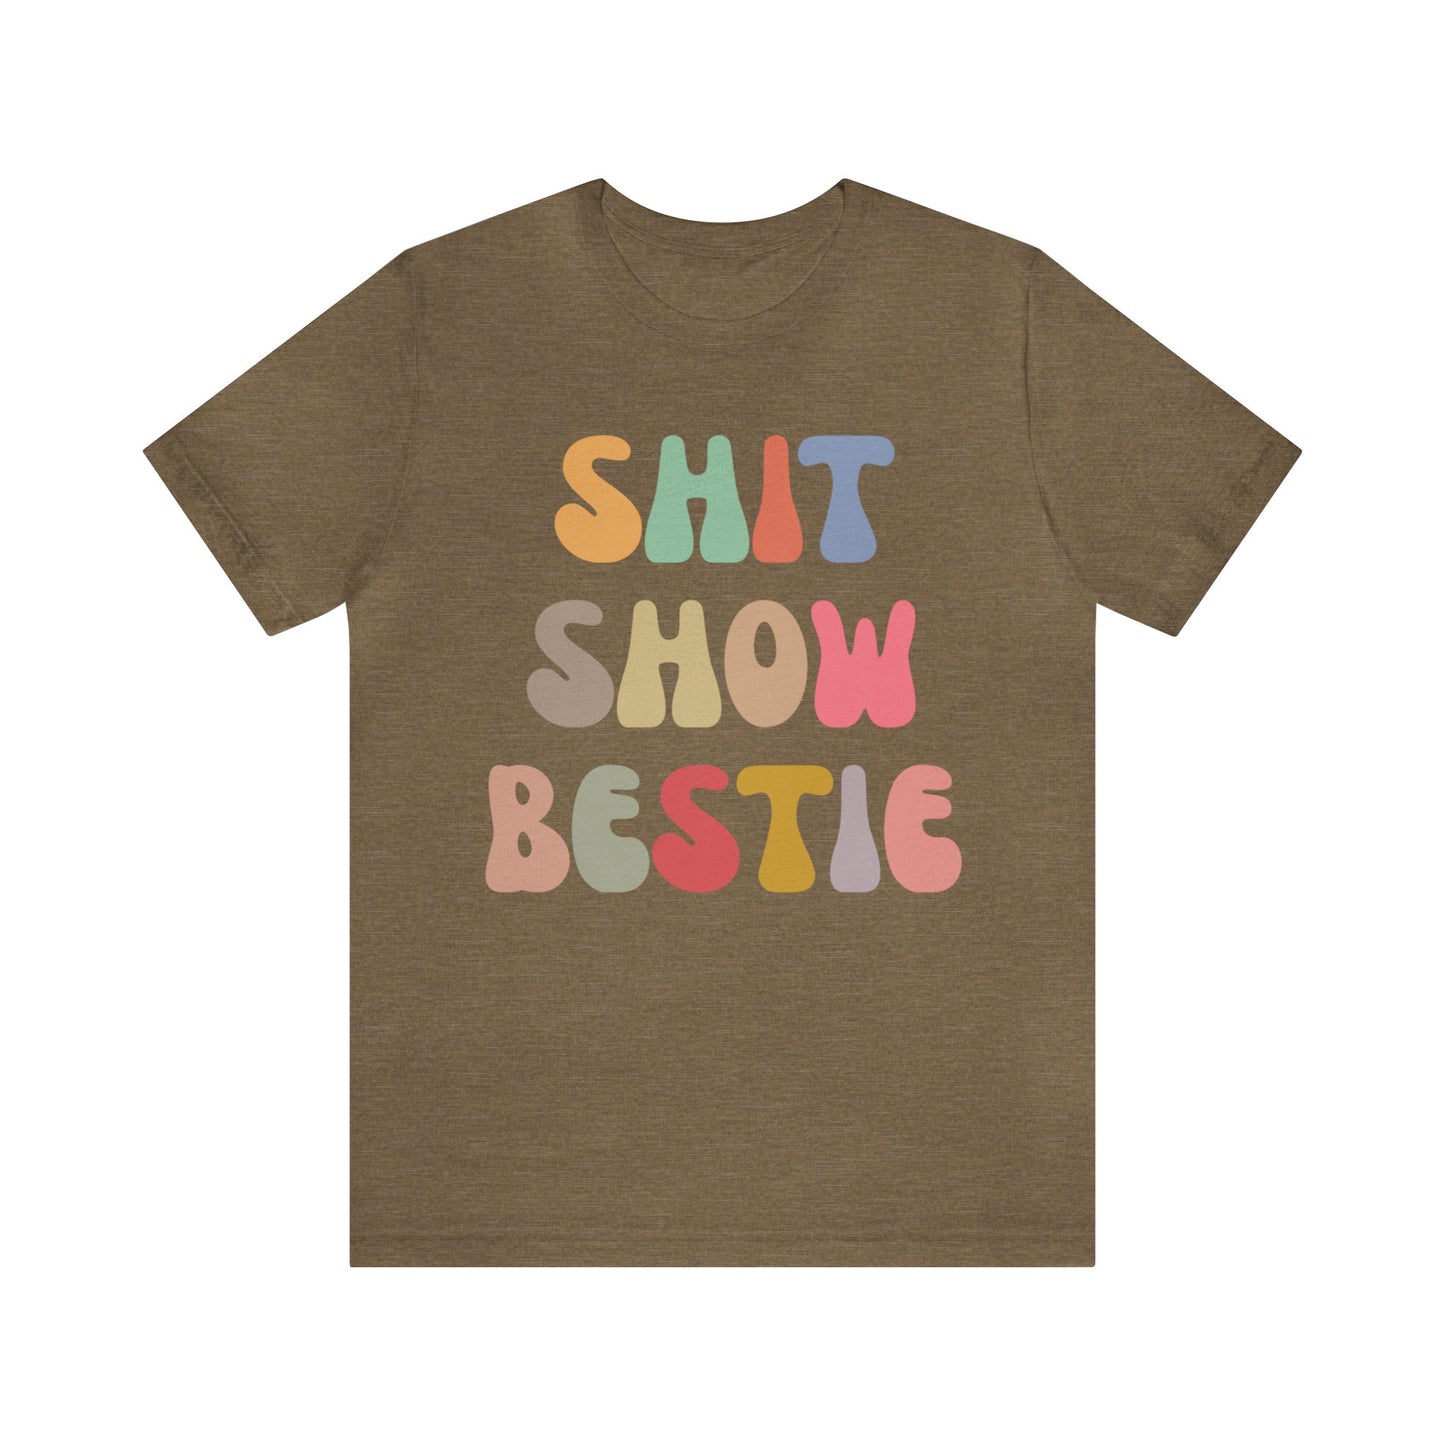 Shit Show Bestie Shirt, BFF Shirt for Women, Funny Best Friend Shirt, Forever Bestie Shirt, Matching Besties Shirt, Best Friend Gift, T1306